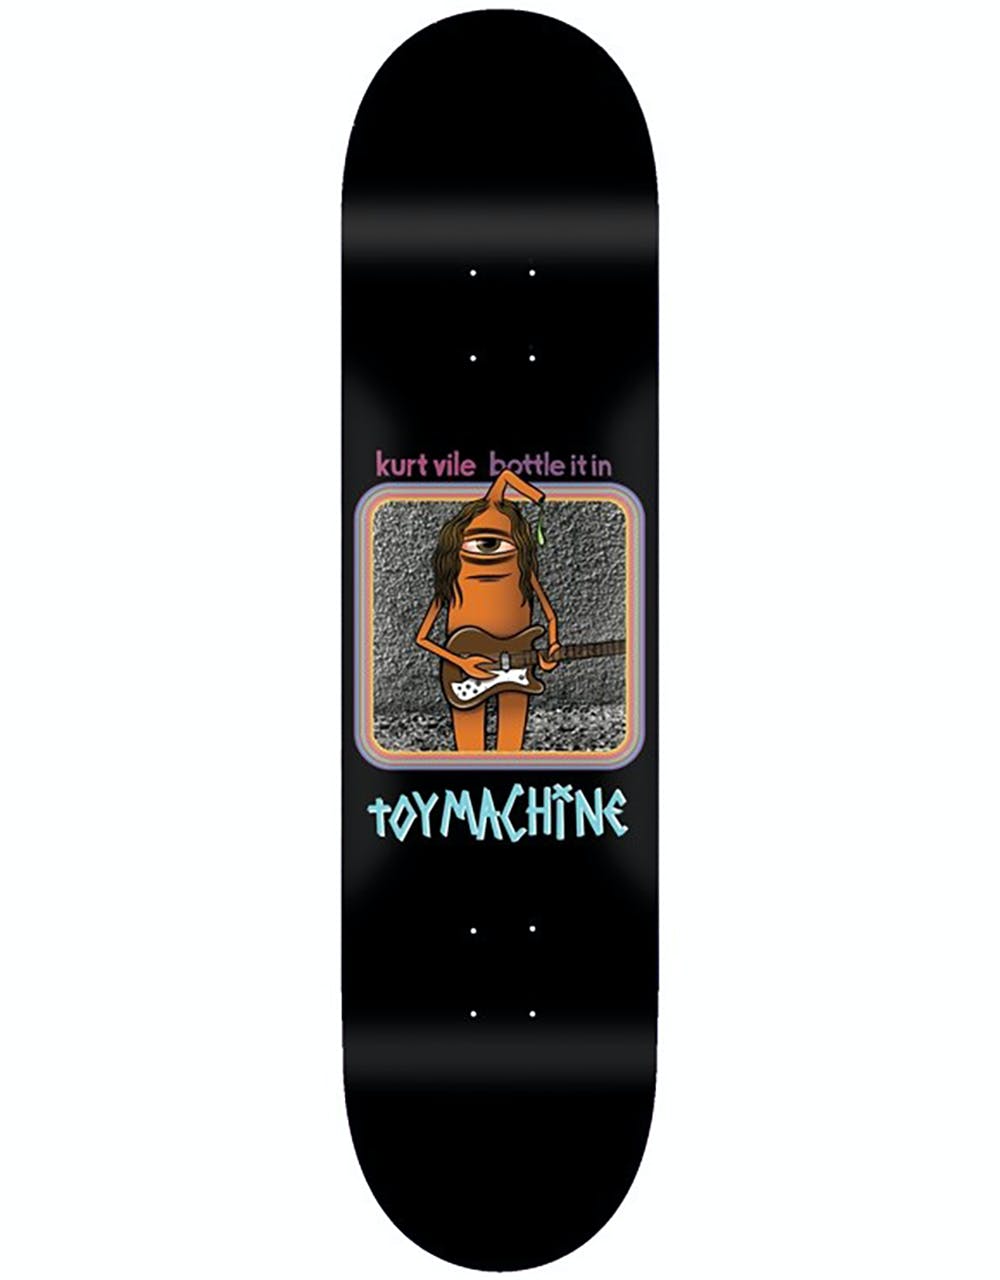 Toy Machine x Kurt Vile Bottle It In Skateboard Deck - 8.25"